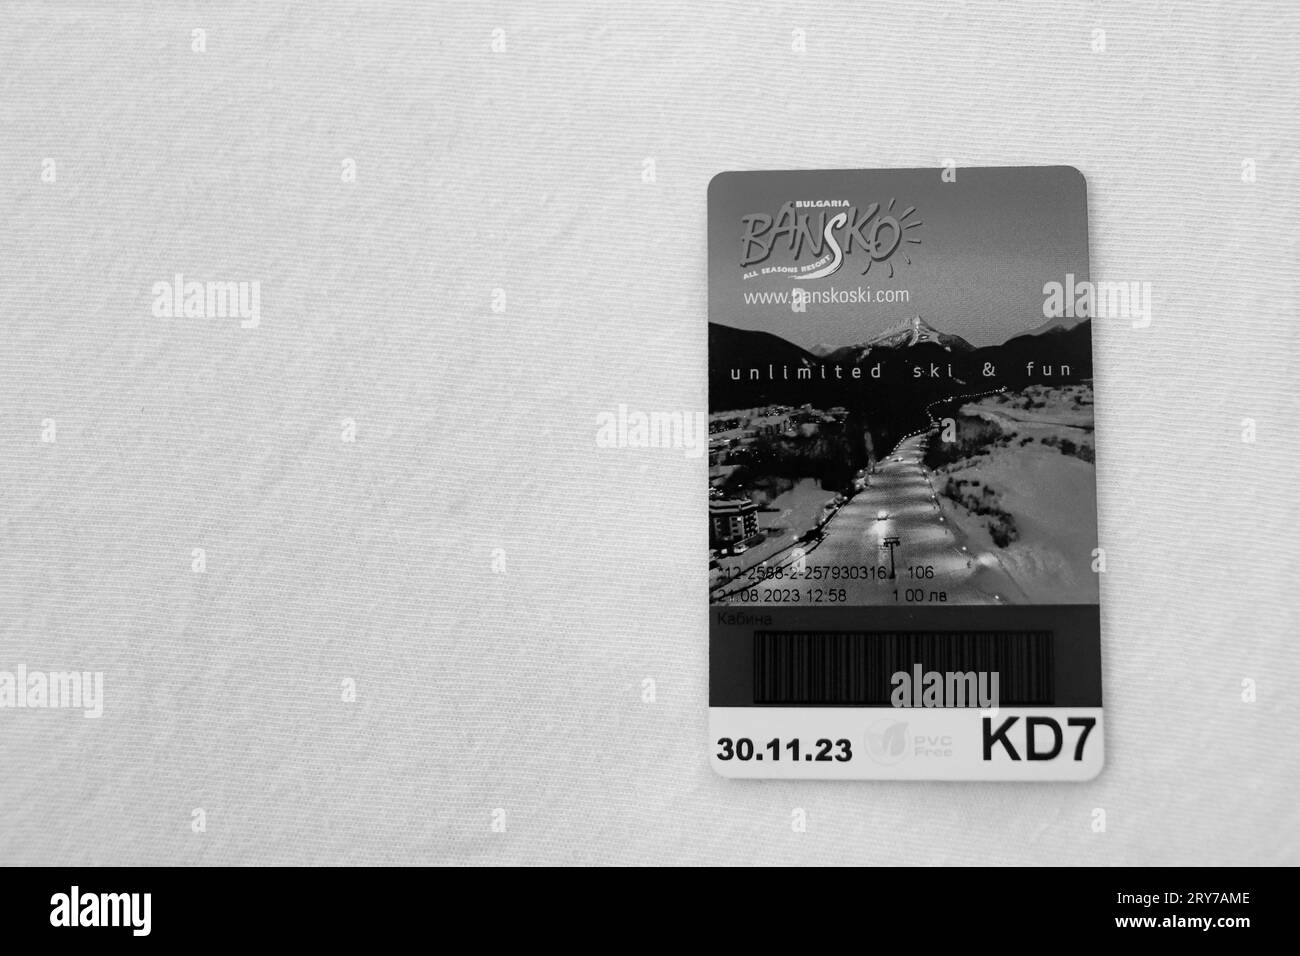 Noir et blanc, Bansko ski, billet d'entrée à l'attraction télécabine sur fond blanc Banque D'Images